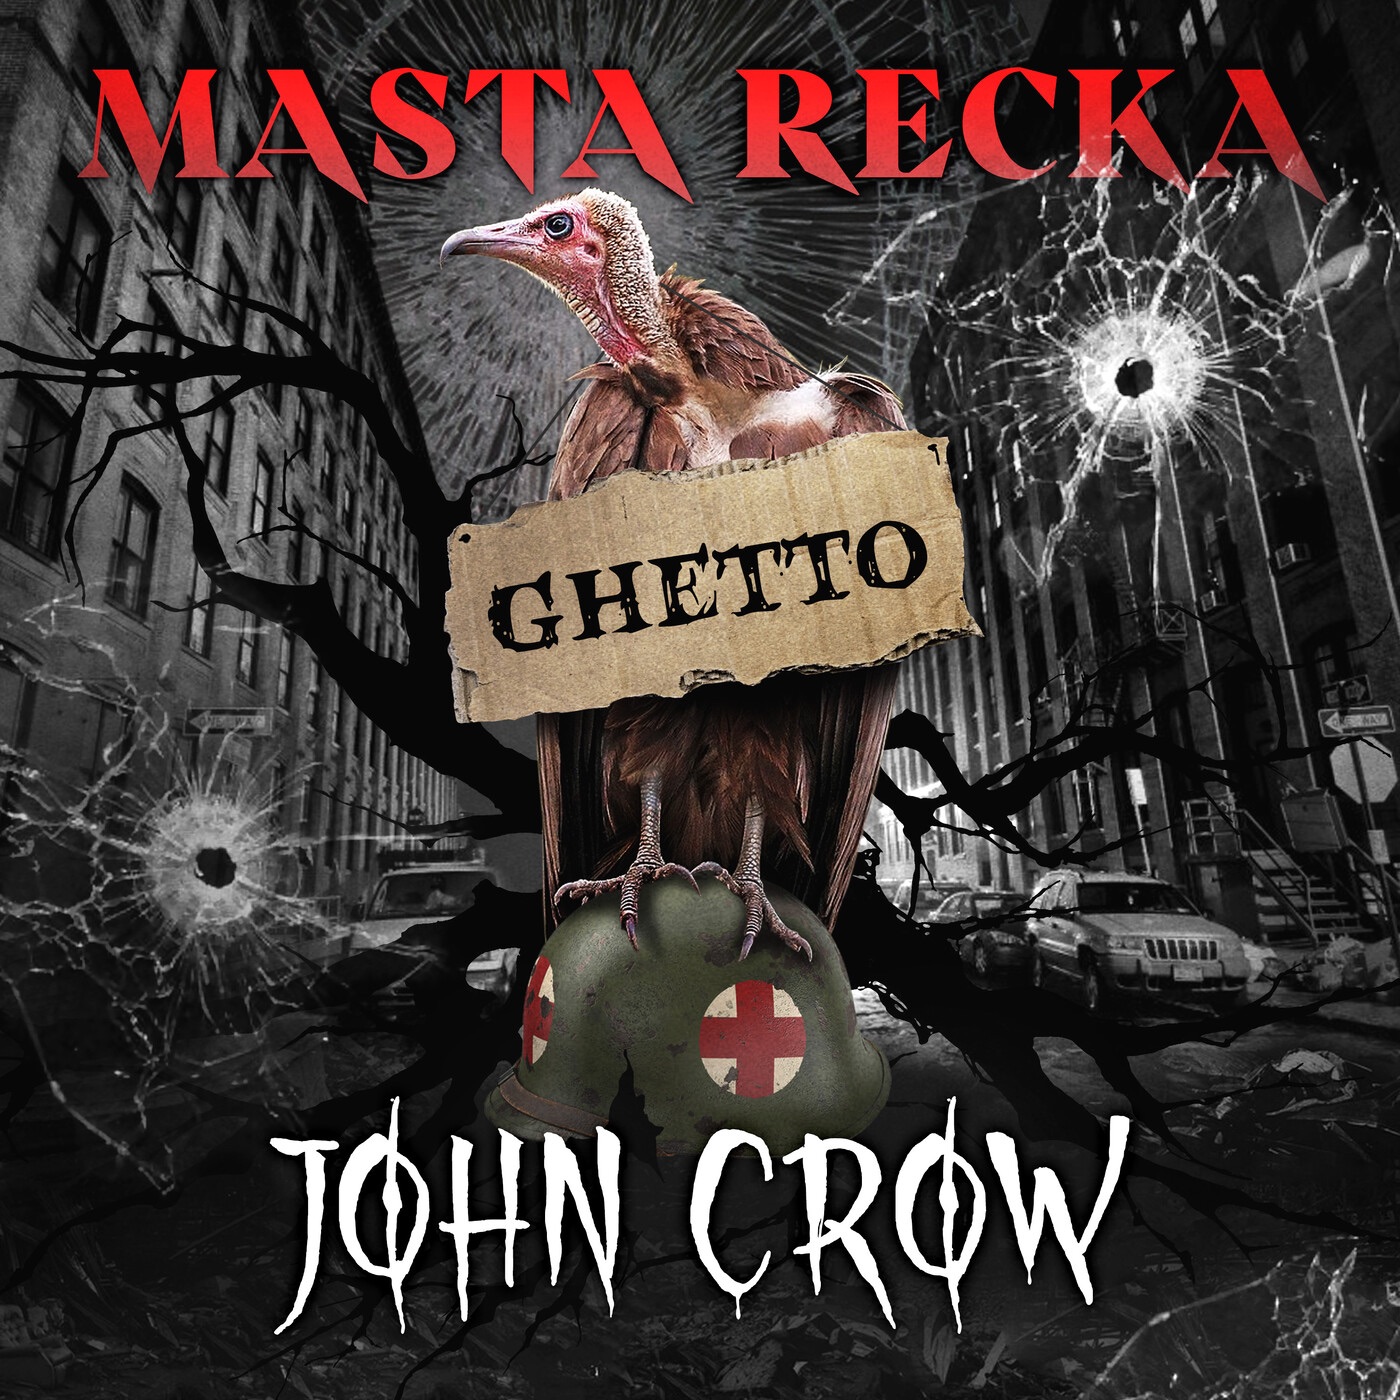 Ghetto John Crow